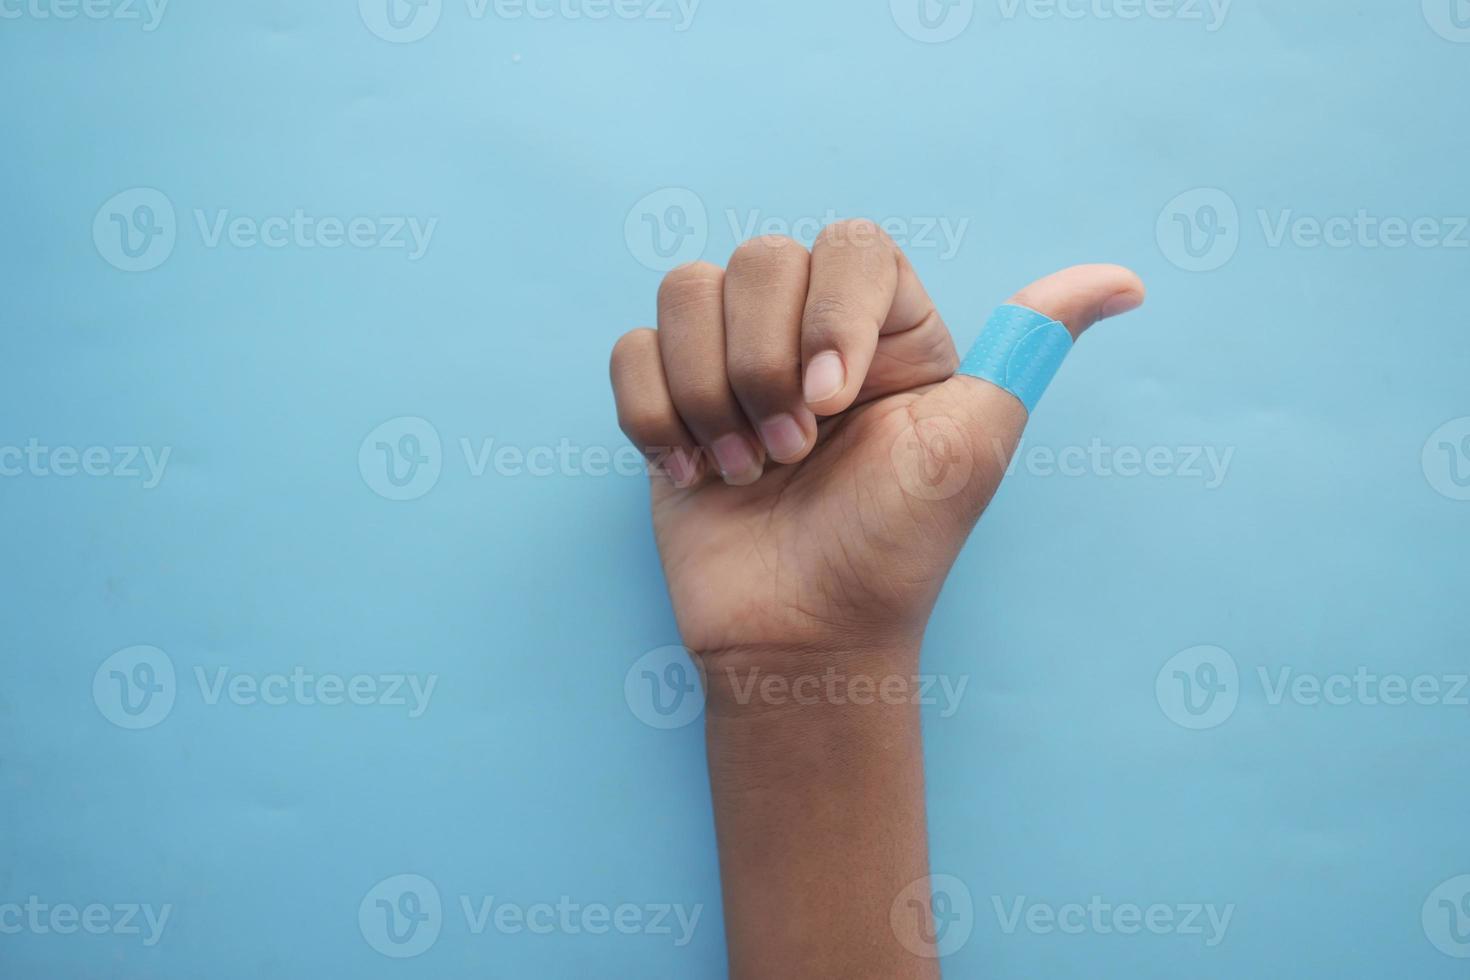 vendaje adhesivo de color azul en la mano foto